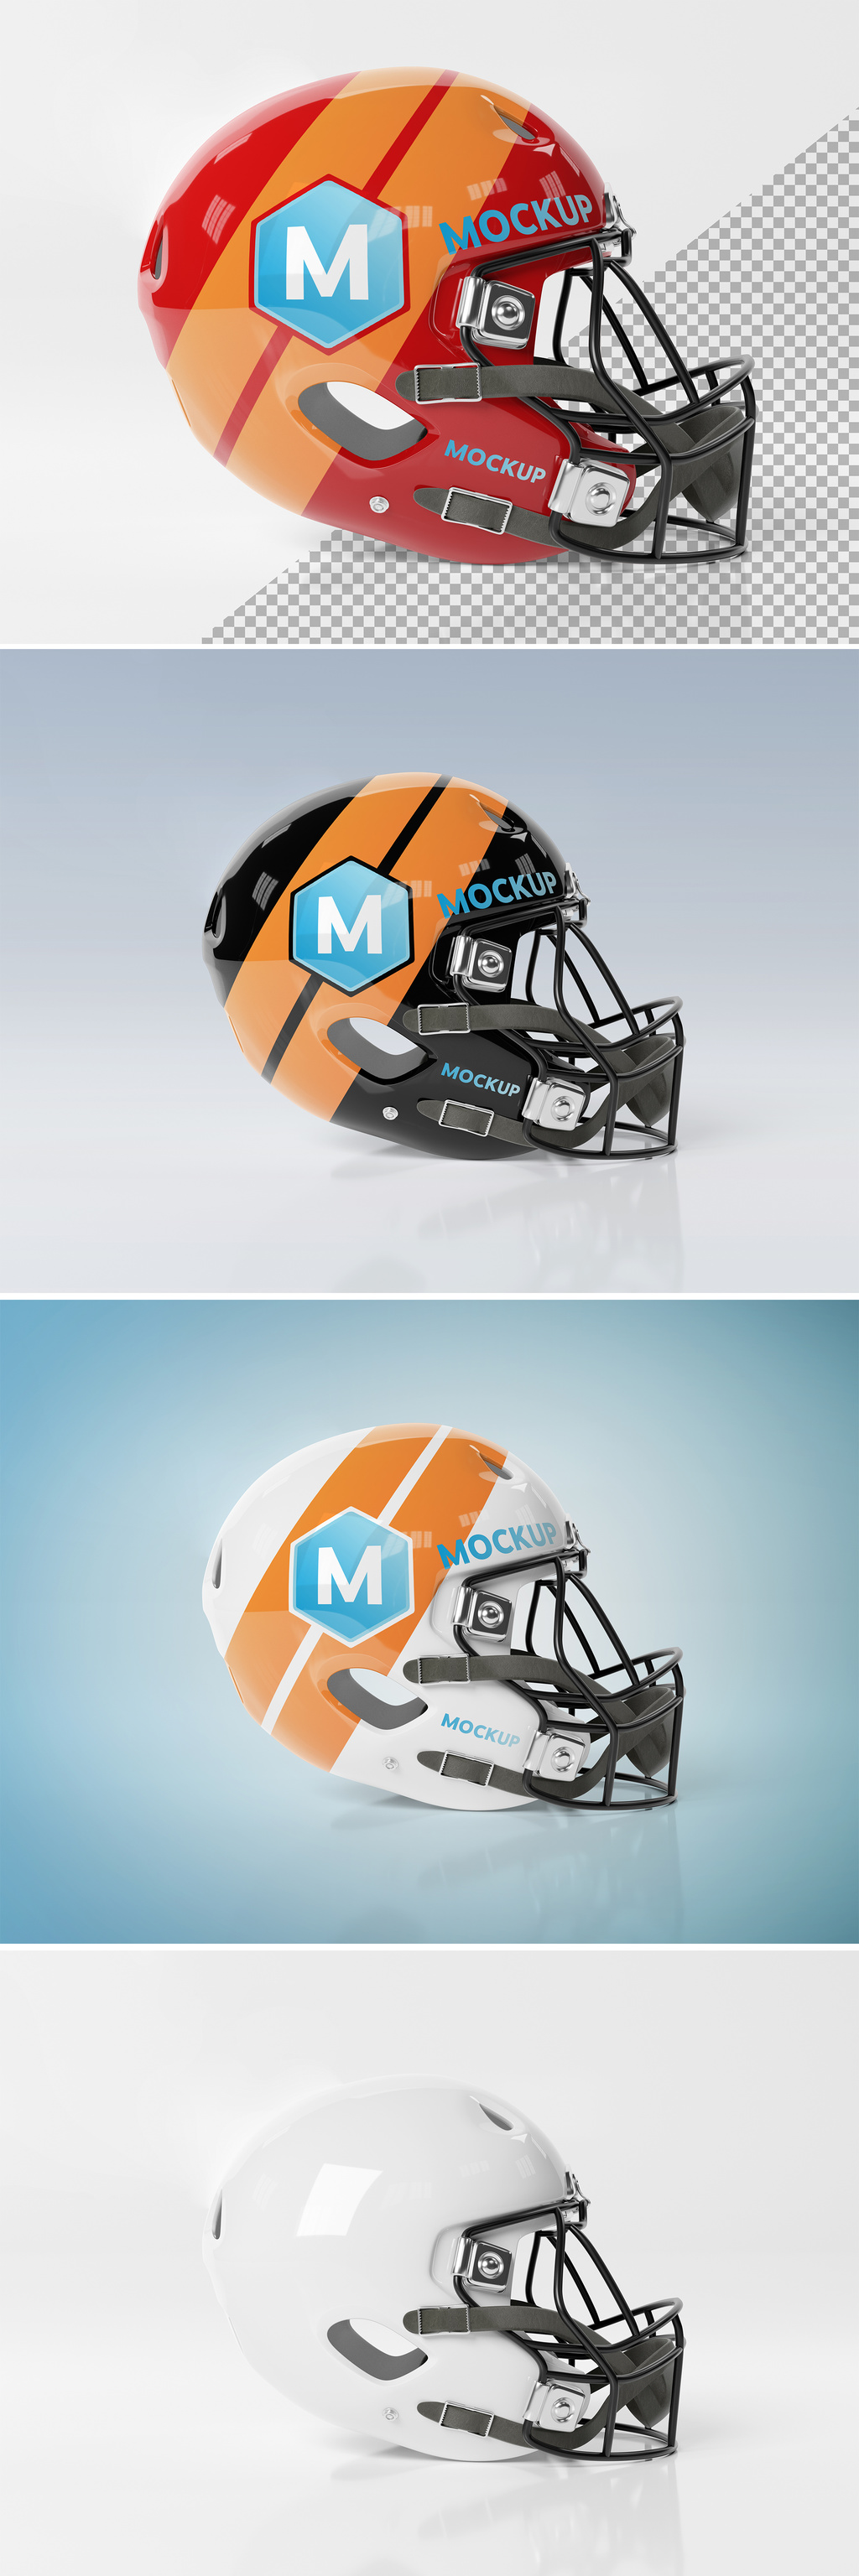 美食足球橄榄球头盔图案设计 Helmet Mockup #2